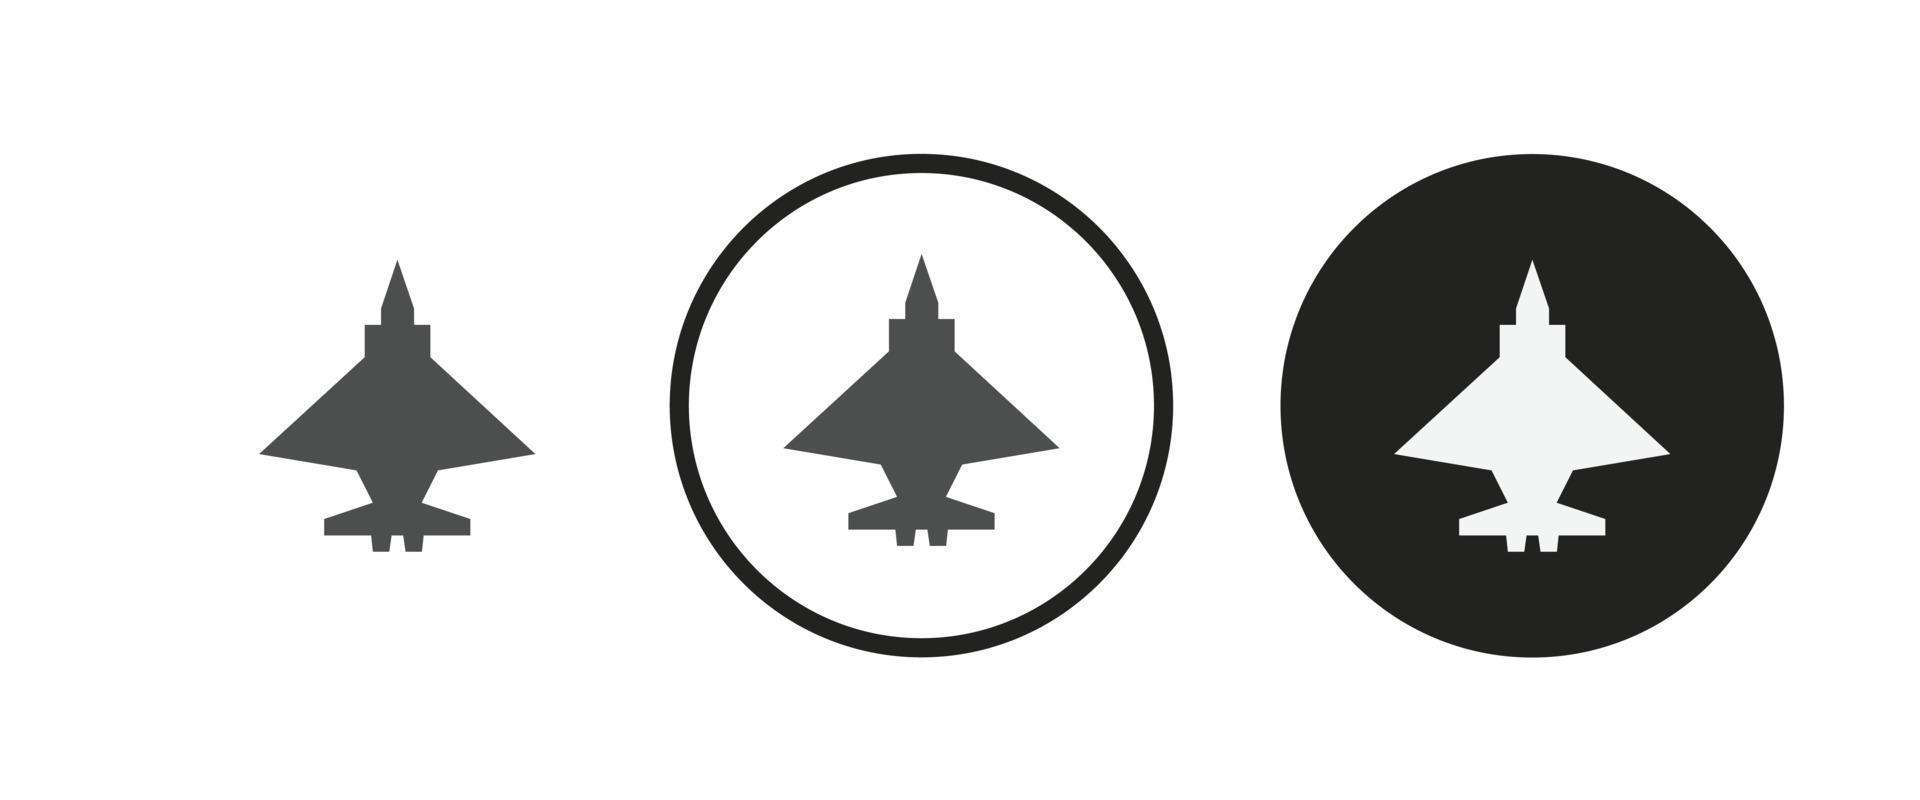 ícone de avião espião. conjunto de ícones da web. coleção de ícones plana. ilustração vetorial simples. vetor